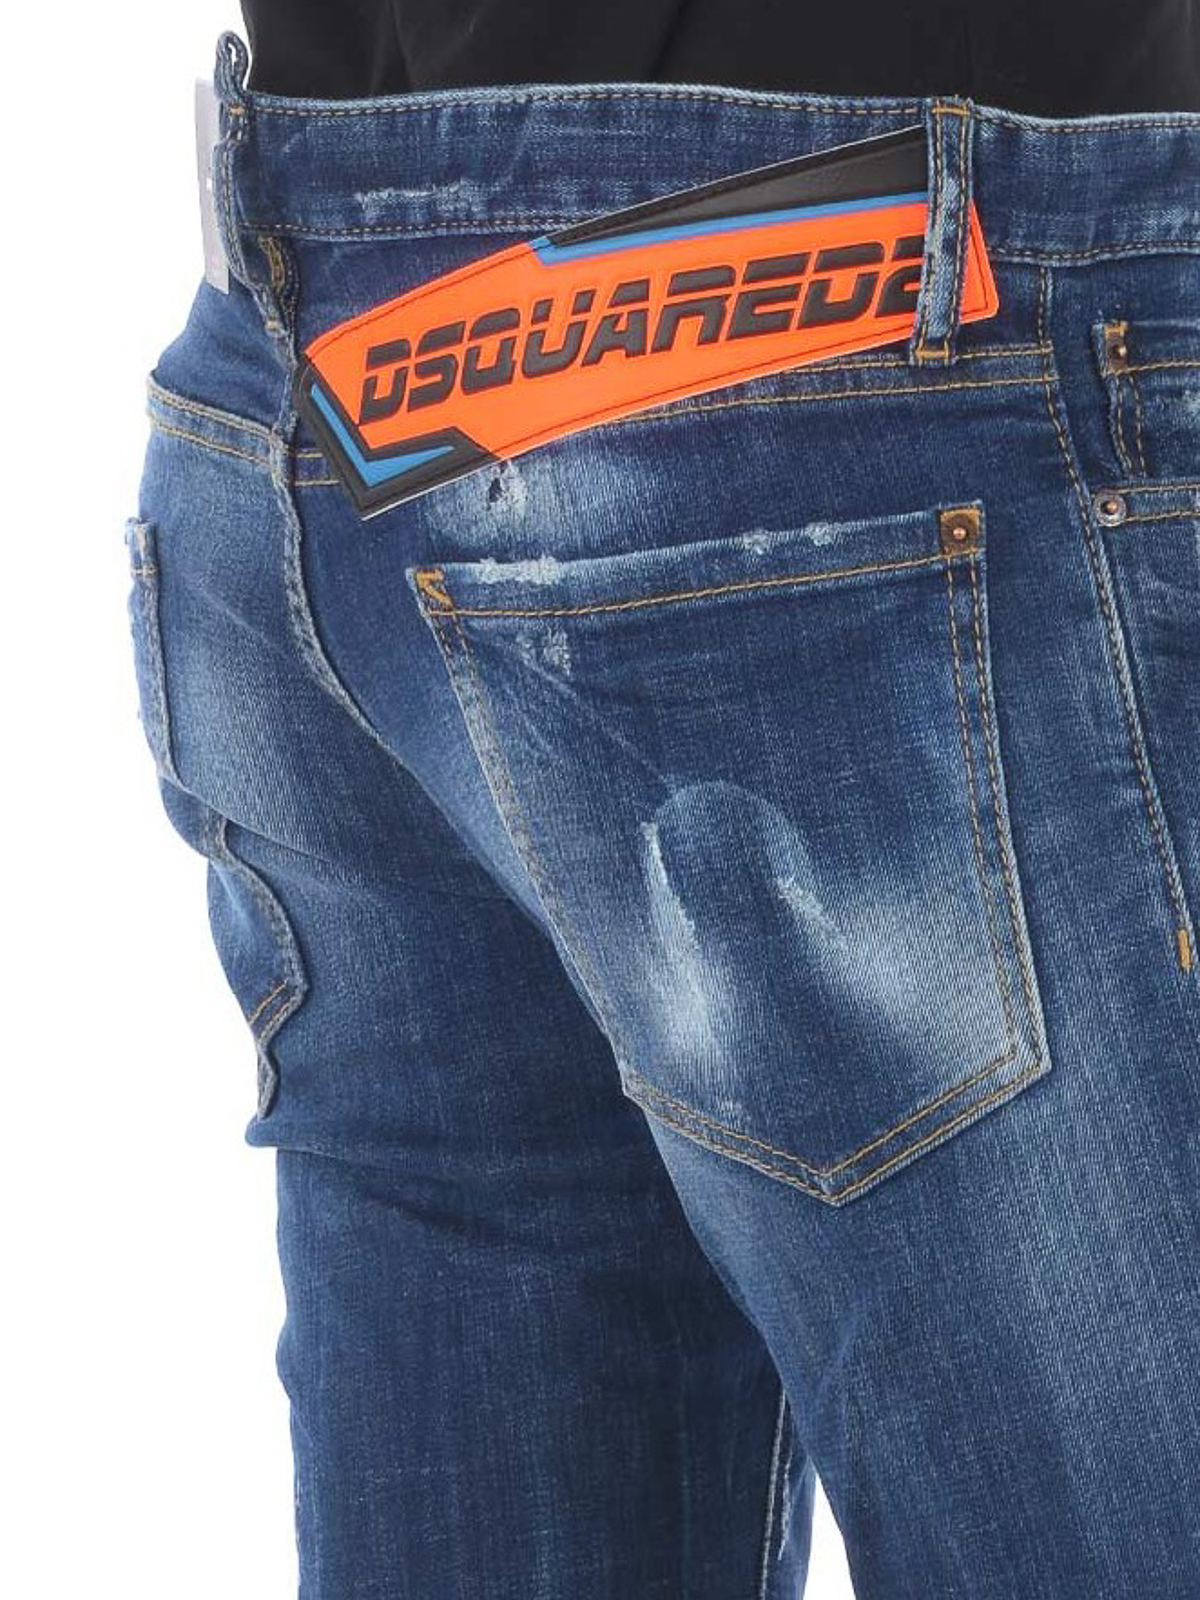 jeans dsquared2 avec patch